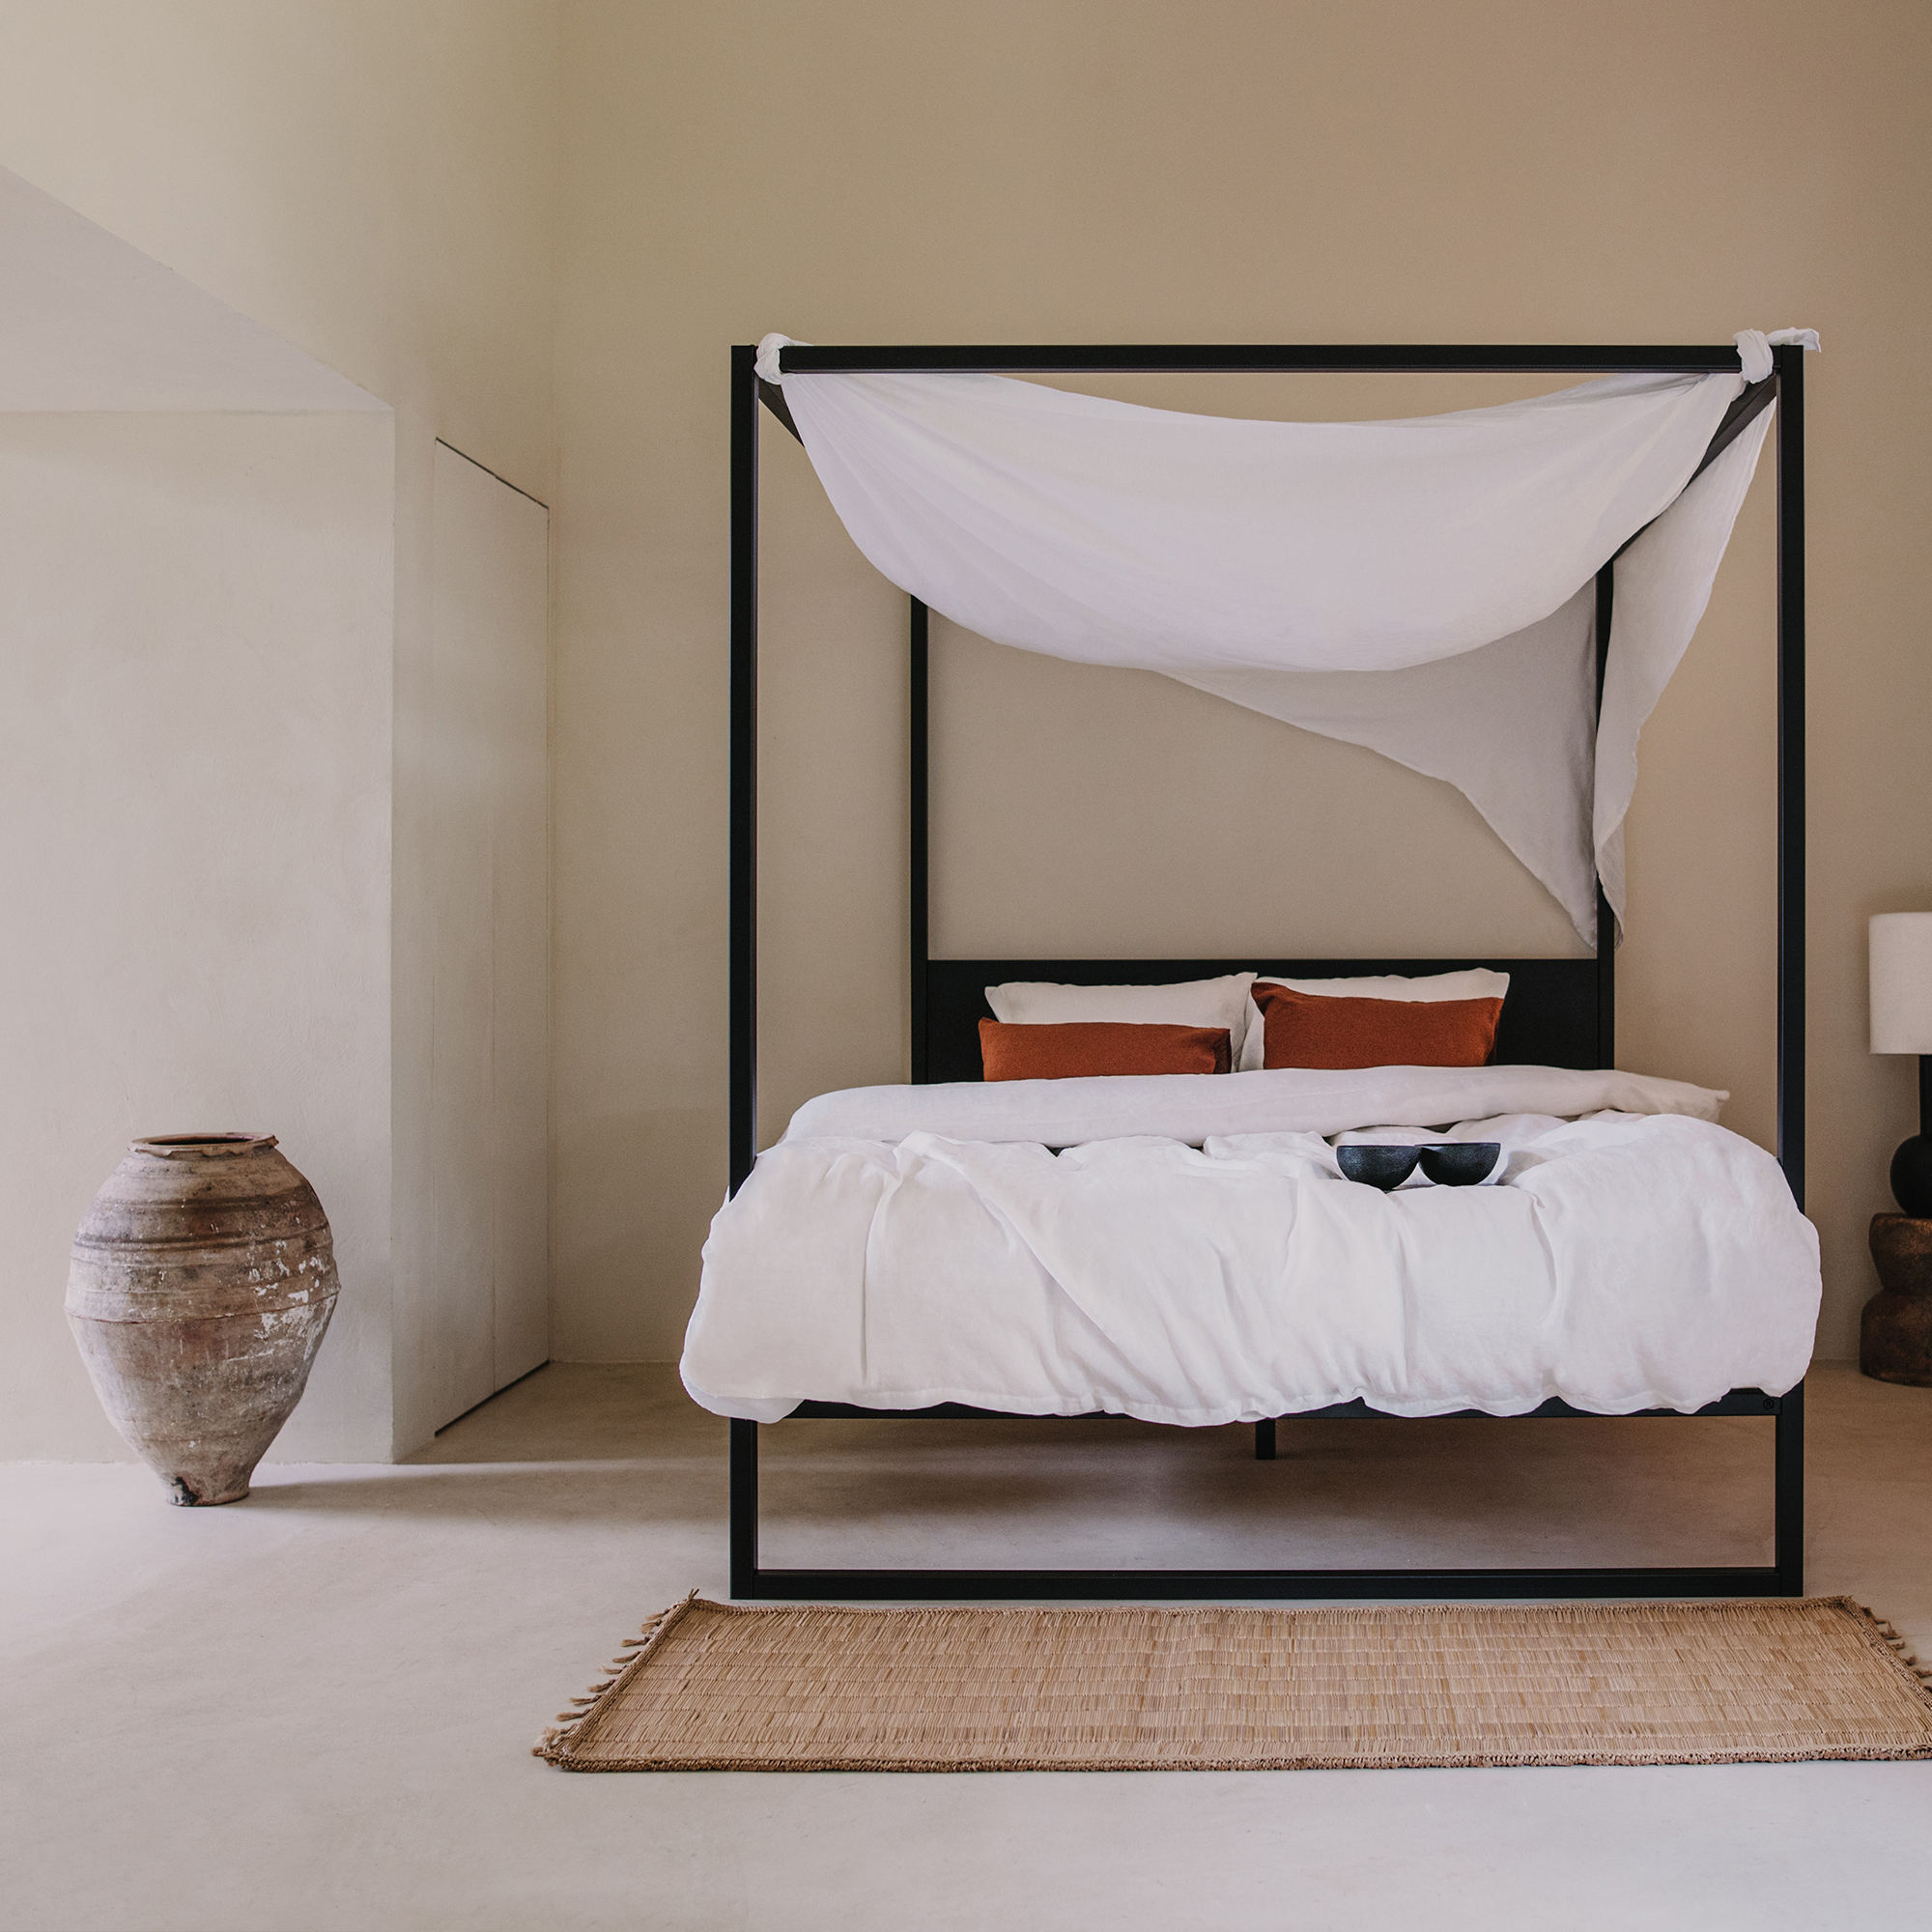 robuust amsterdam, bed, interieur, minimalistisch